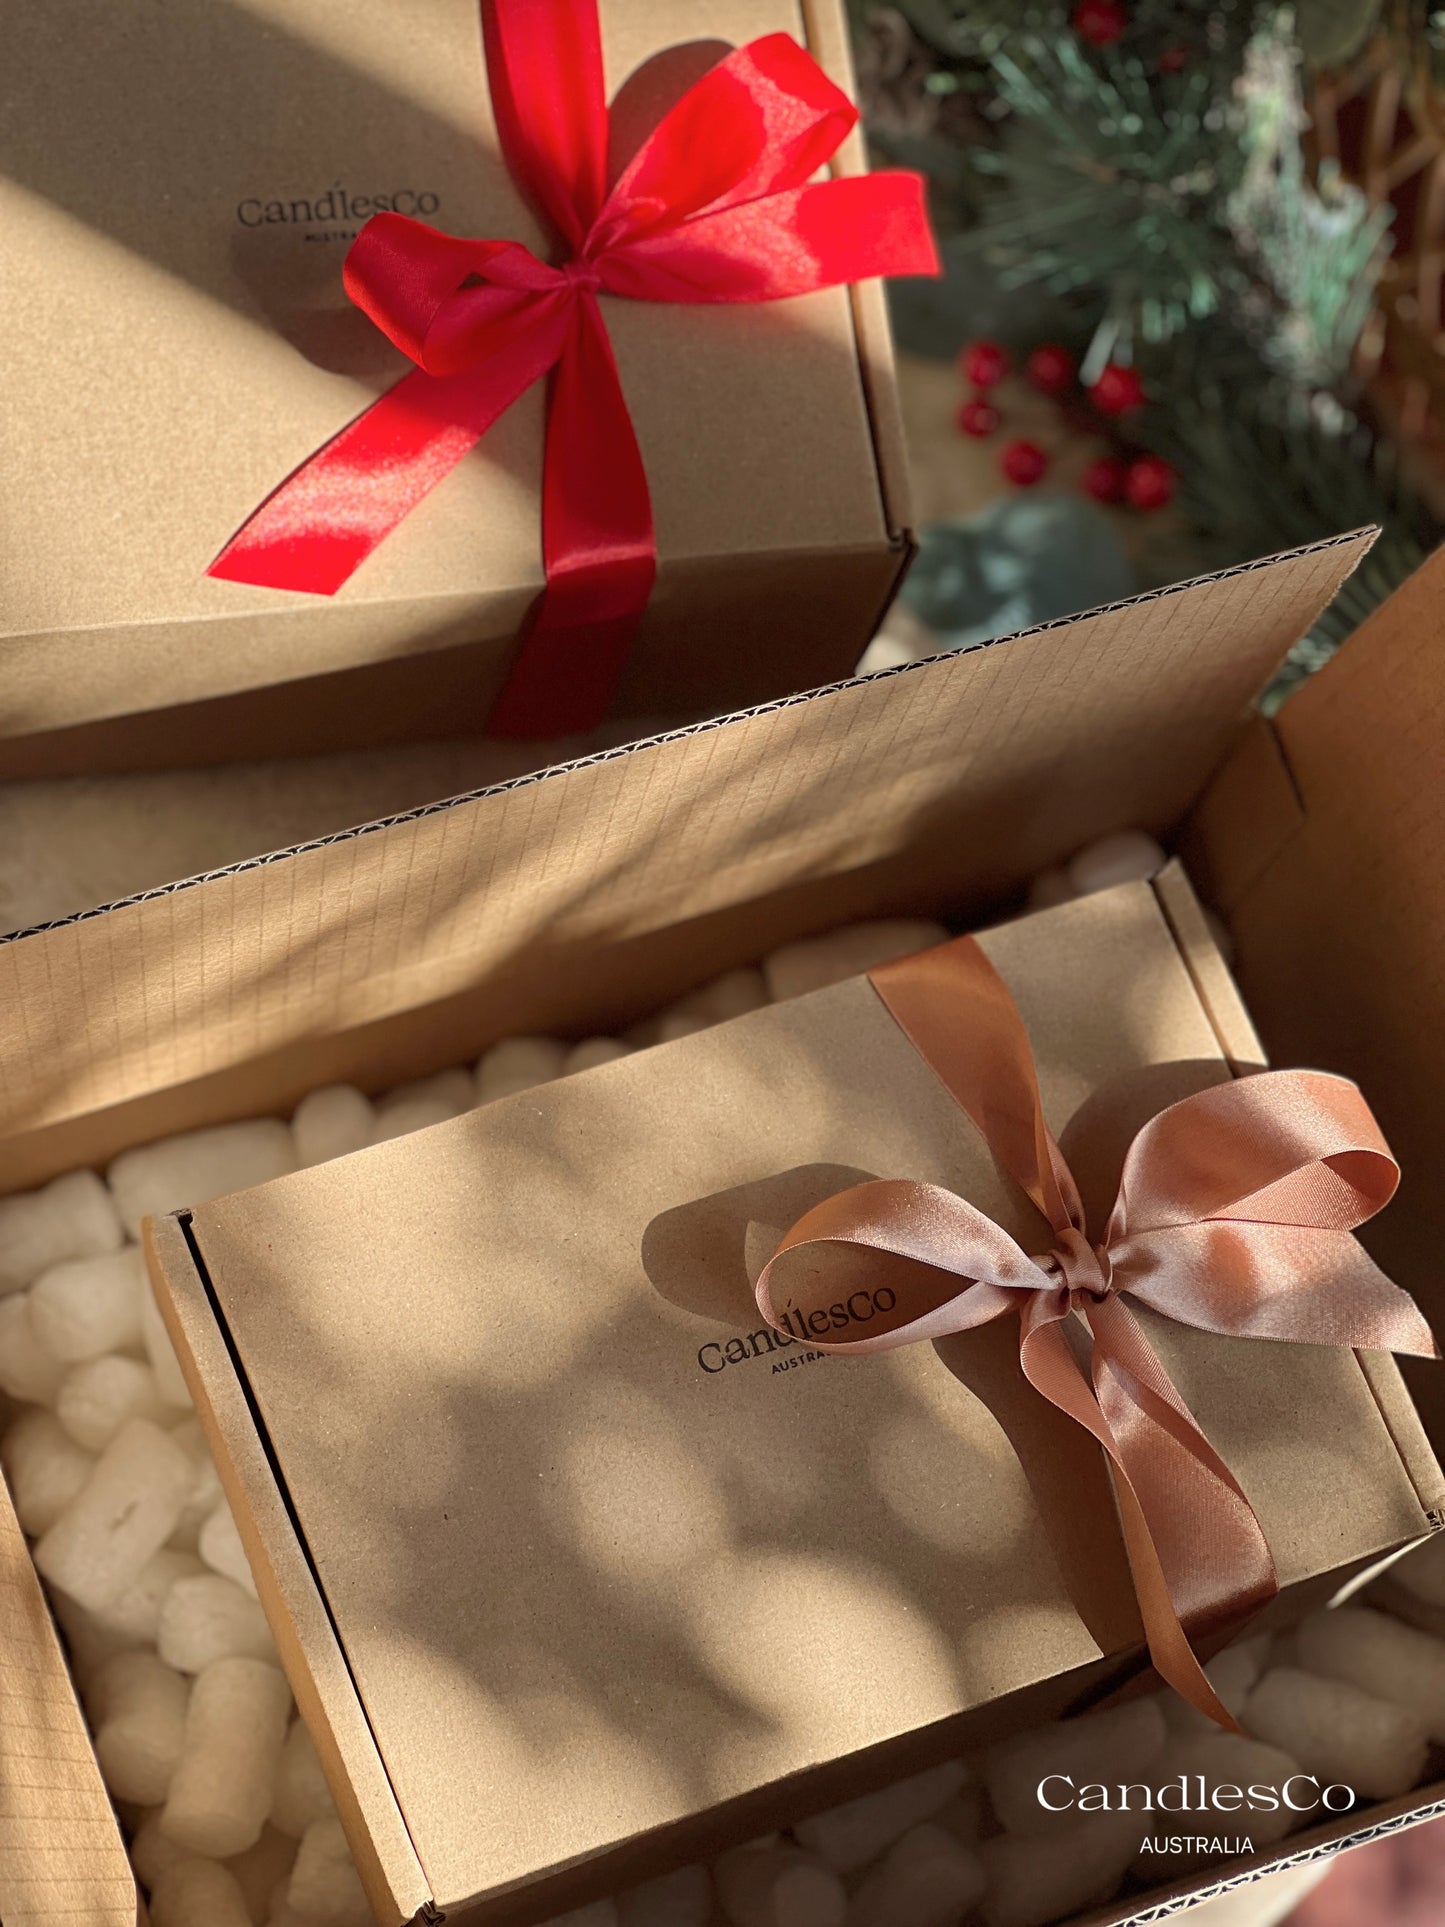 Festive Joy Gift Box